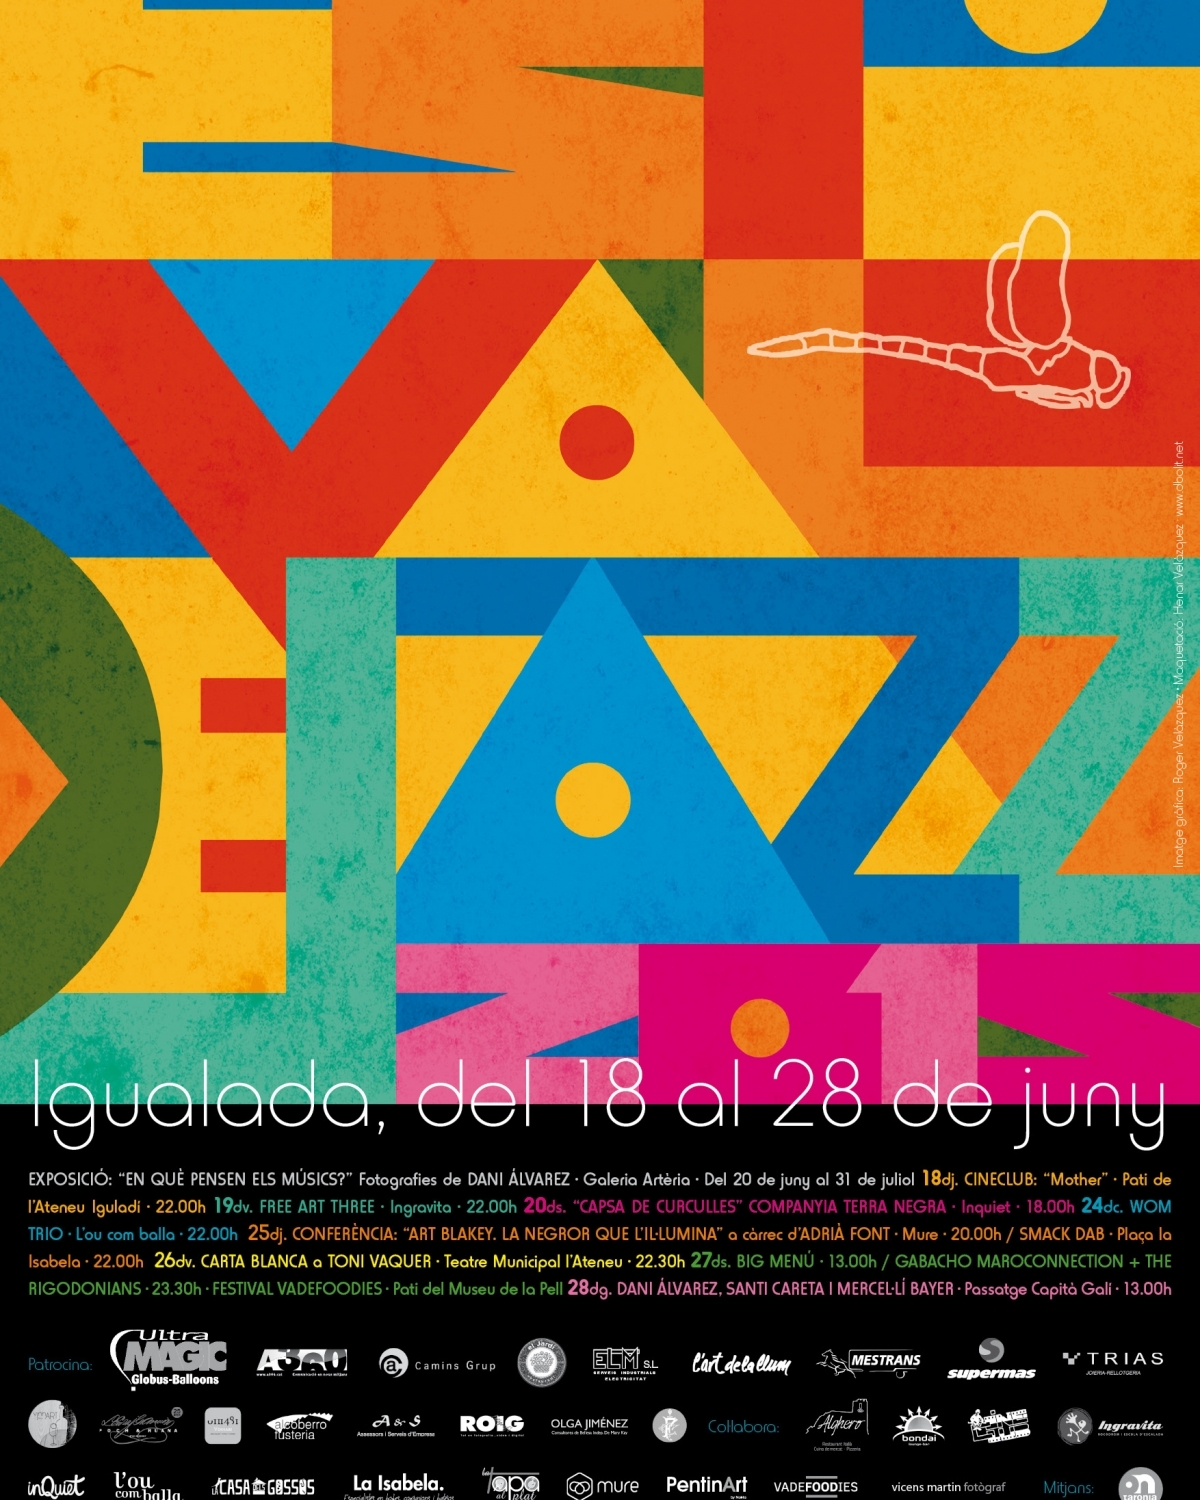 El cartell de l'Estival de Jazz 2015